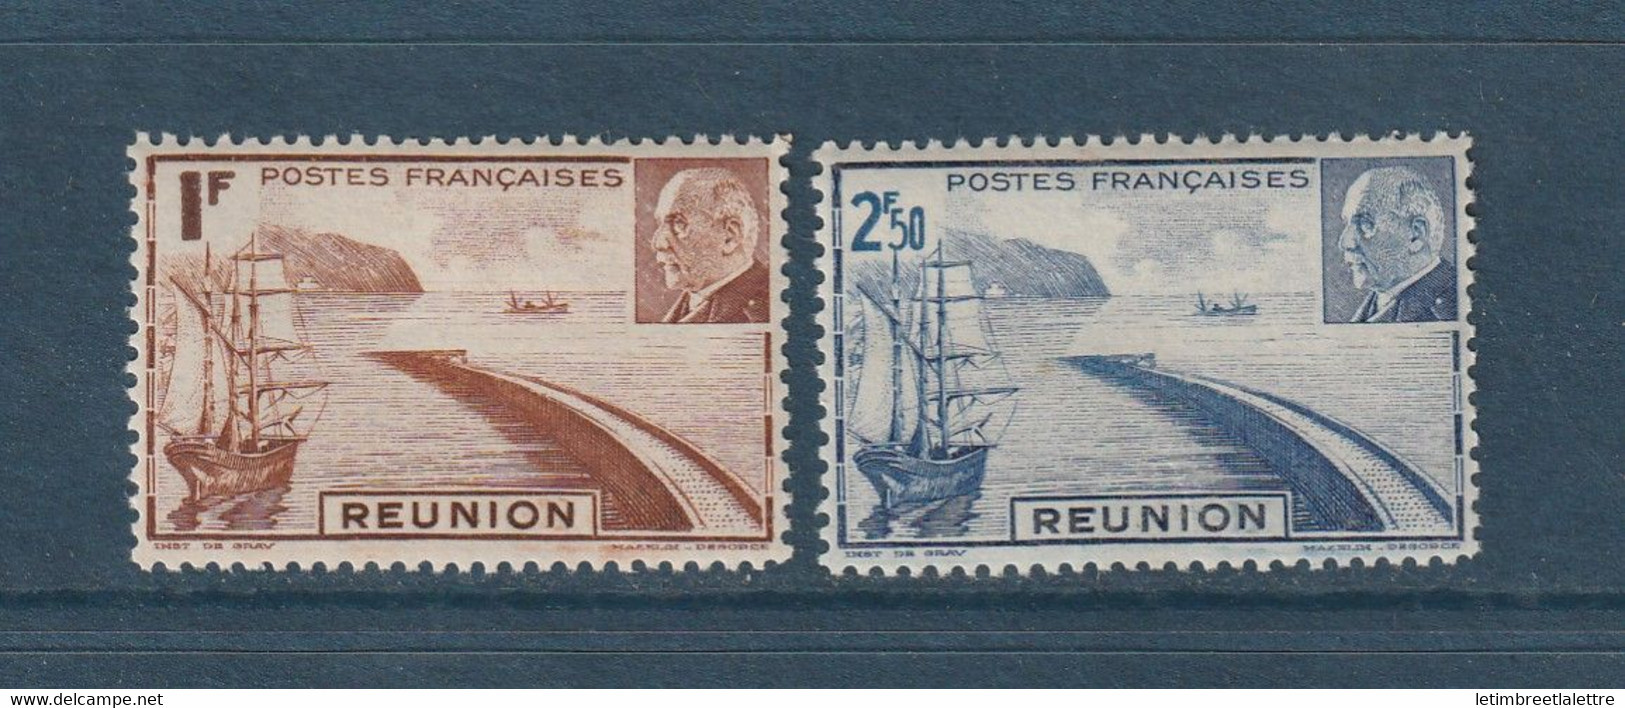 Réunion - YT N° 178 à 179 ** - Neuf Sans Charnière - 1941 - Unused Stamps